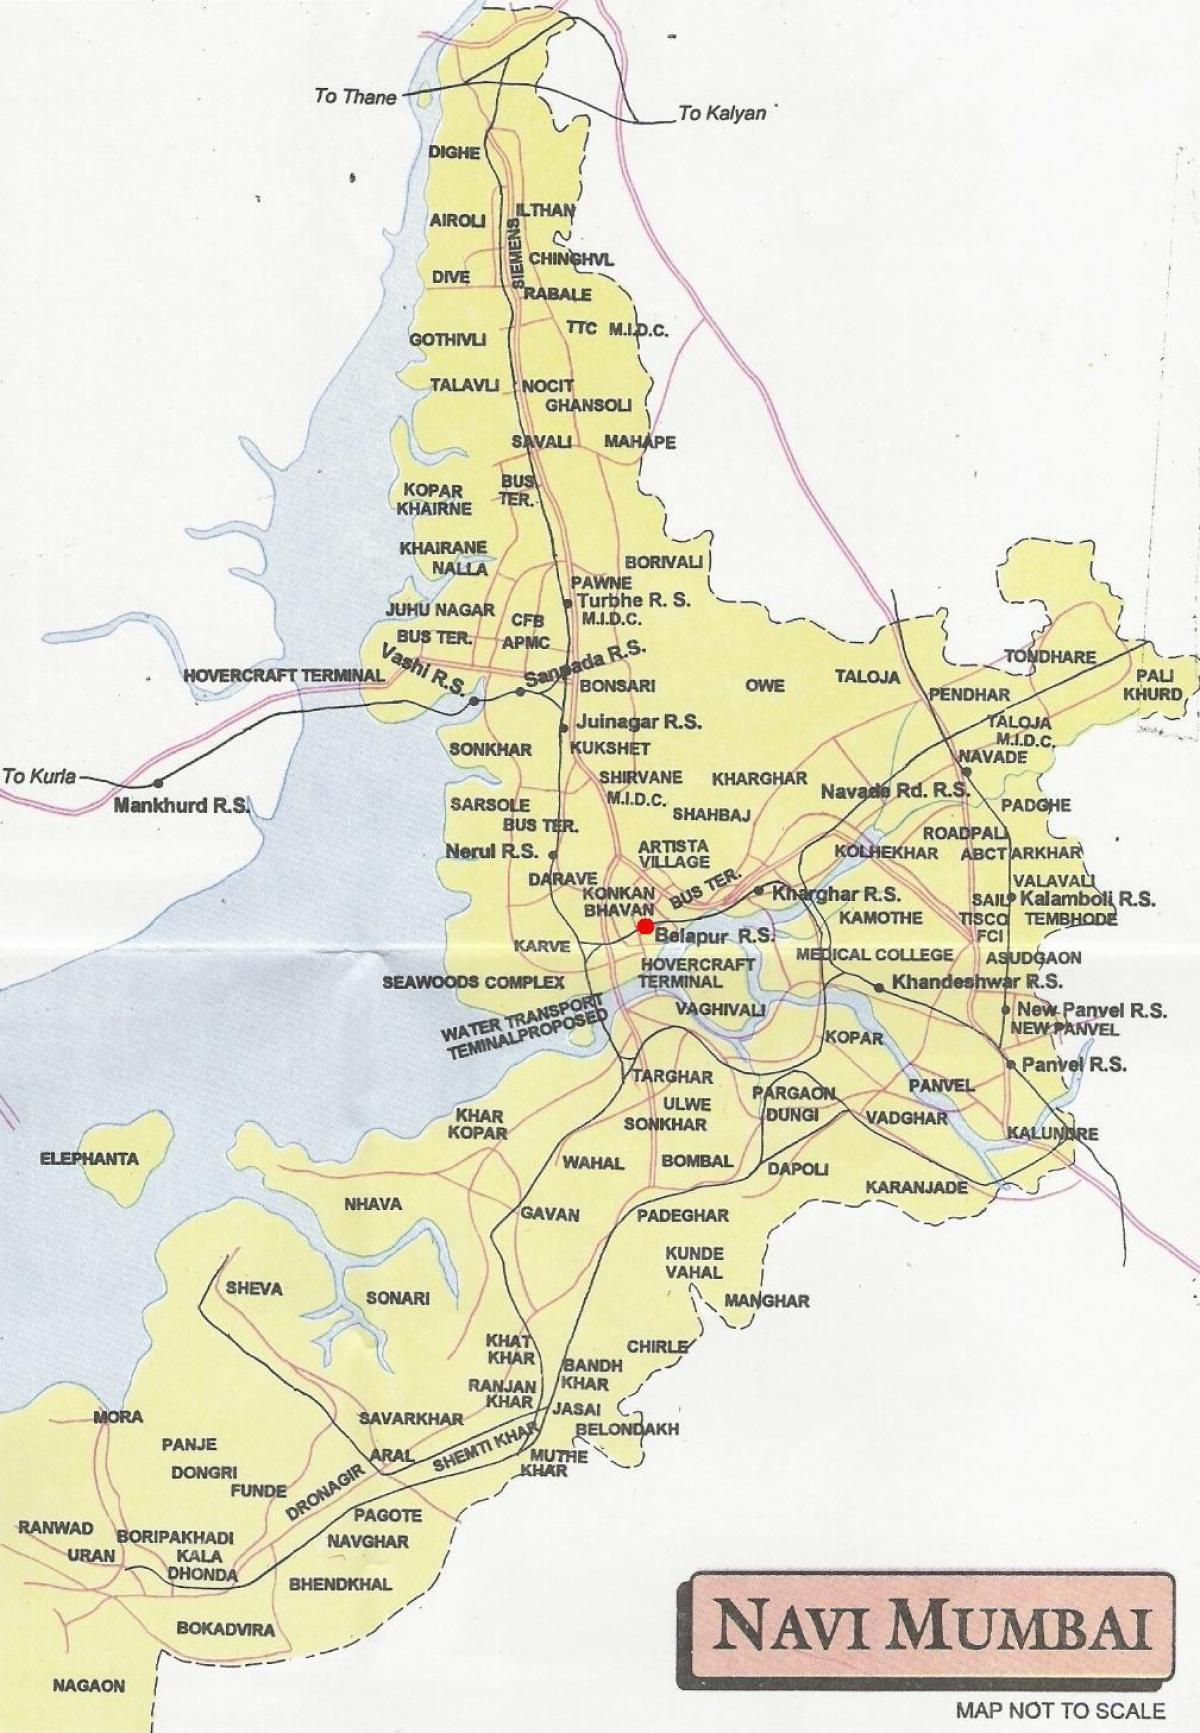 מפה של נאבי מומבאי